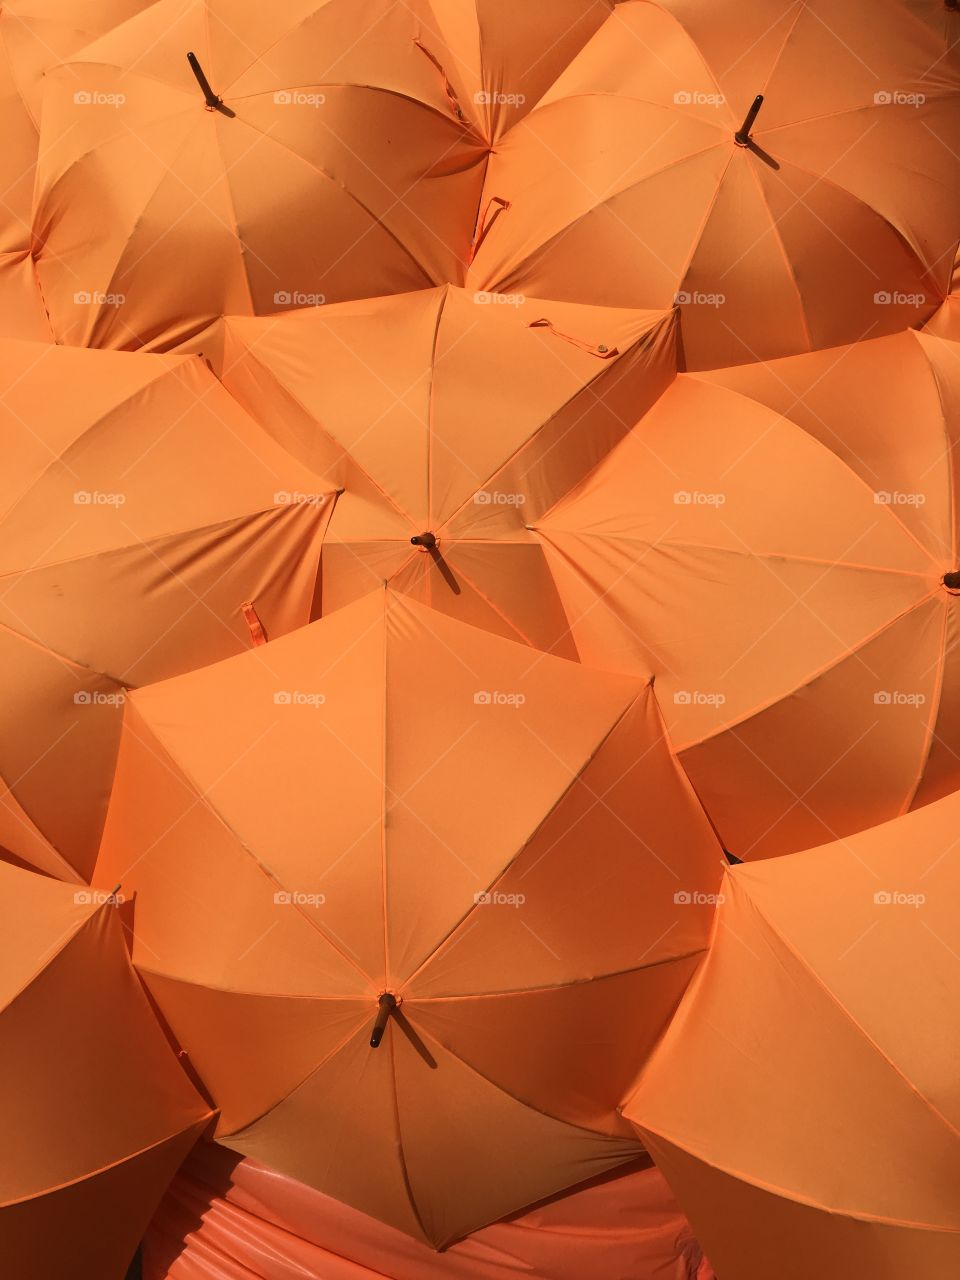 Close-up of an Orange umbrella's